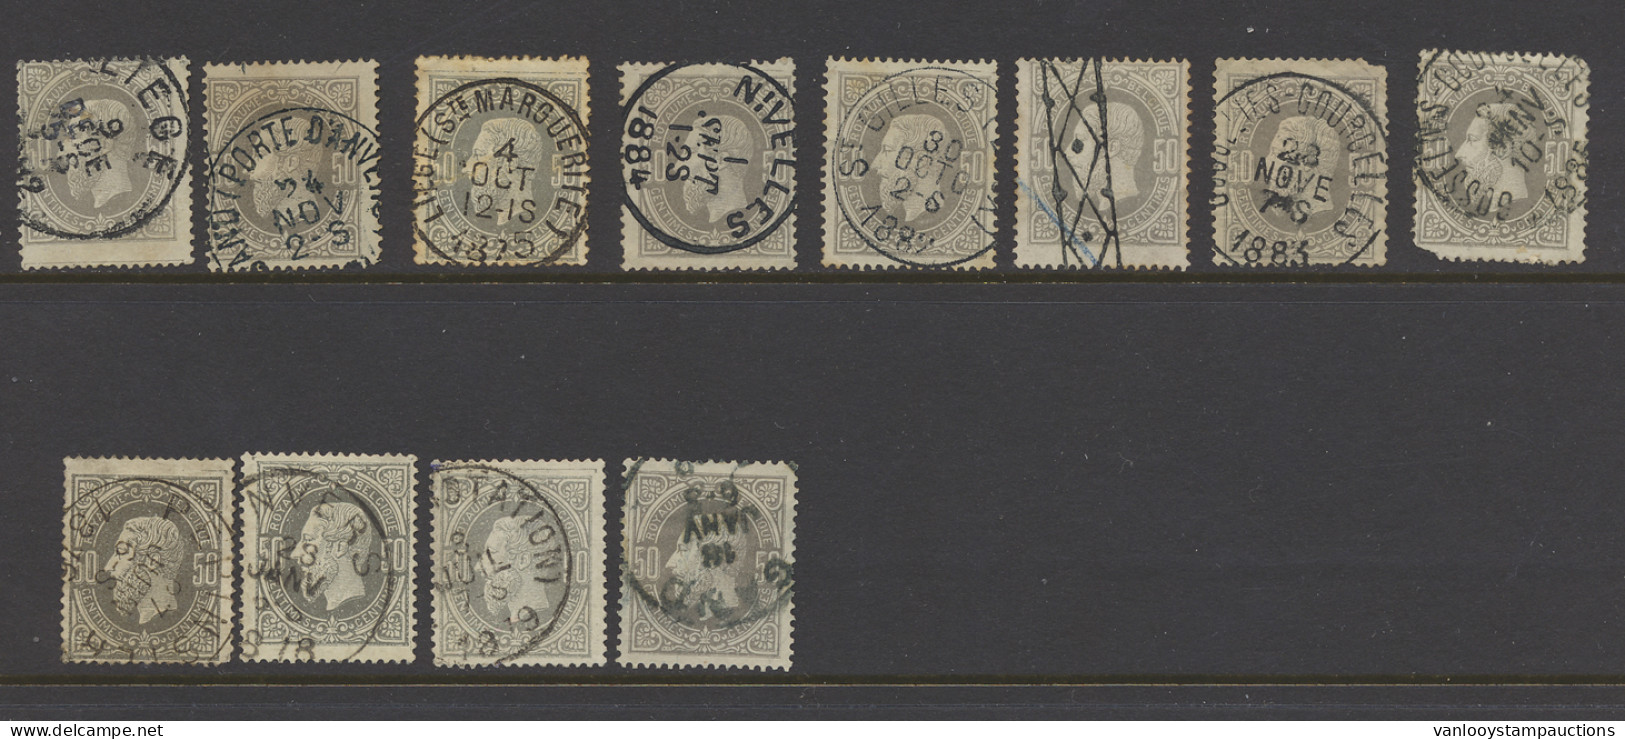 N° 35 50c. Grijs, 12 Exemplaren W.o. Pepinster, Roulette, Enkele Zegels Beschadigd, Zm/m/ntz (OBP €150) - 1869-1883 Leopold II